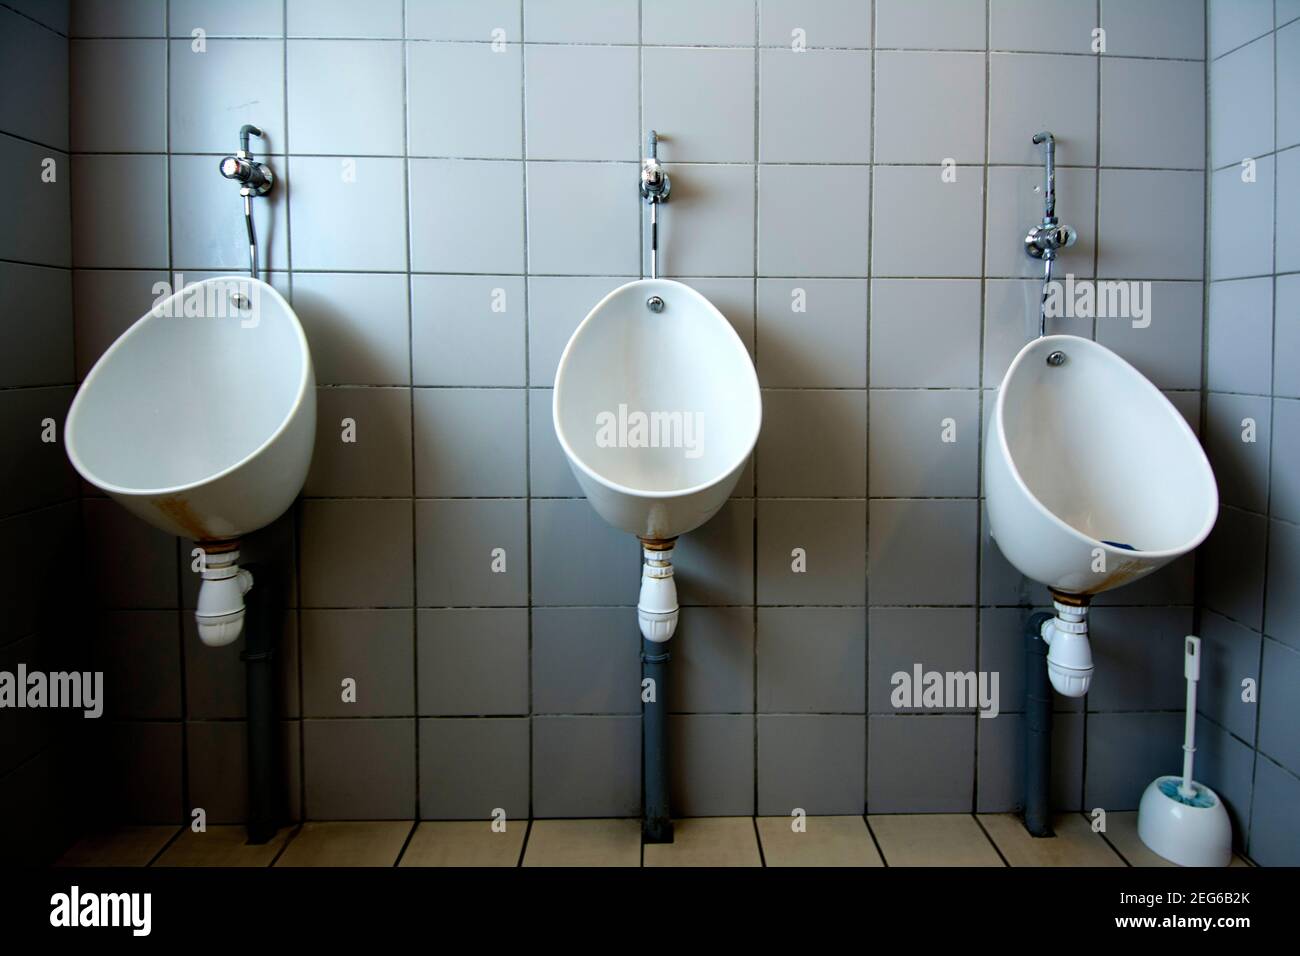 https://c8.alamy.com/comp/2EG6B2K/mens-public-restroom-france-2EG6B2K.jpg